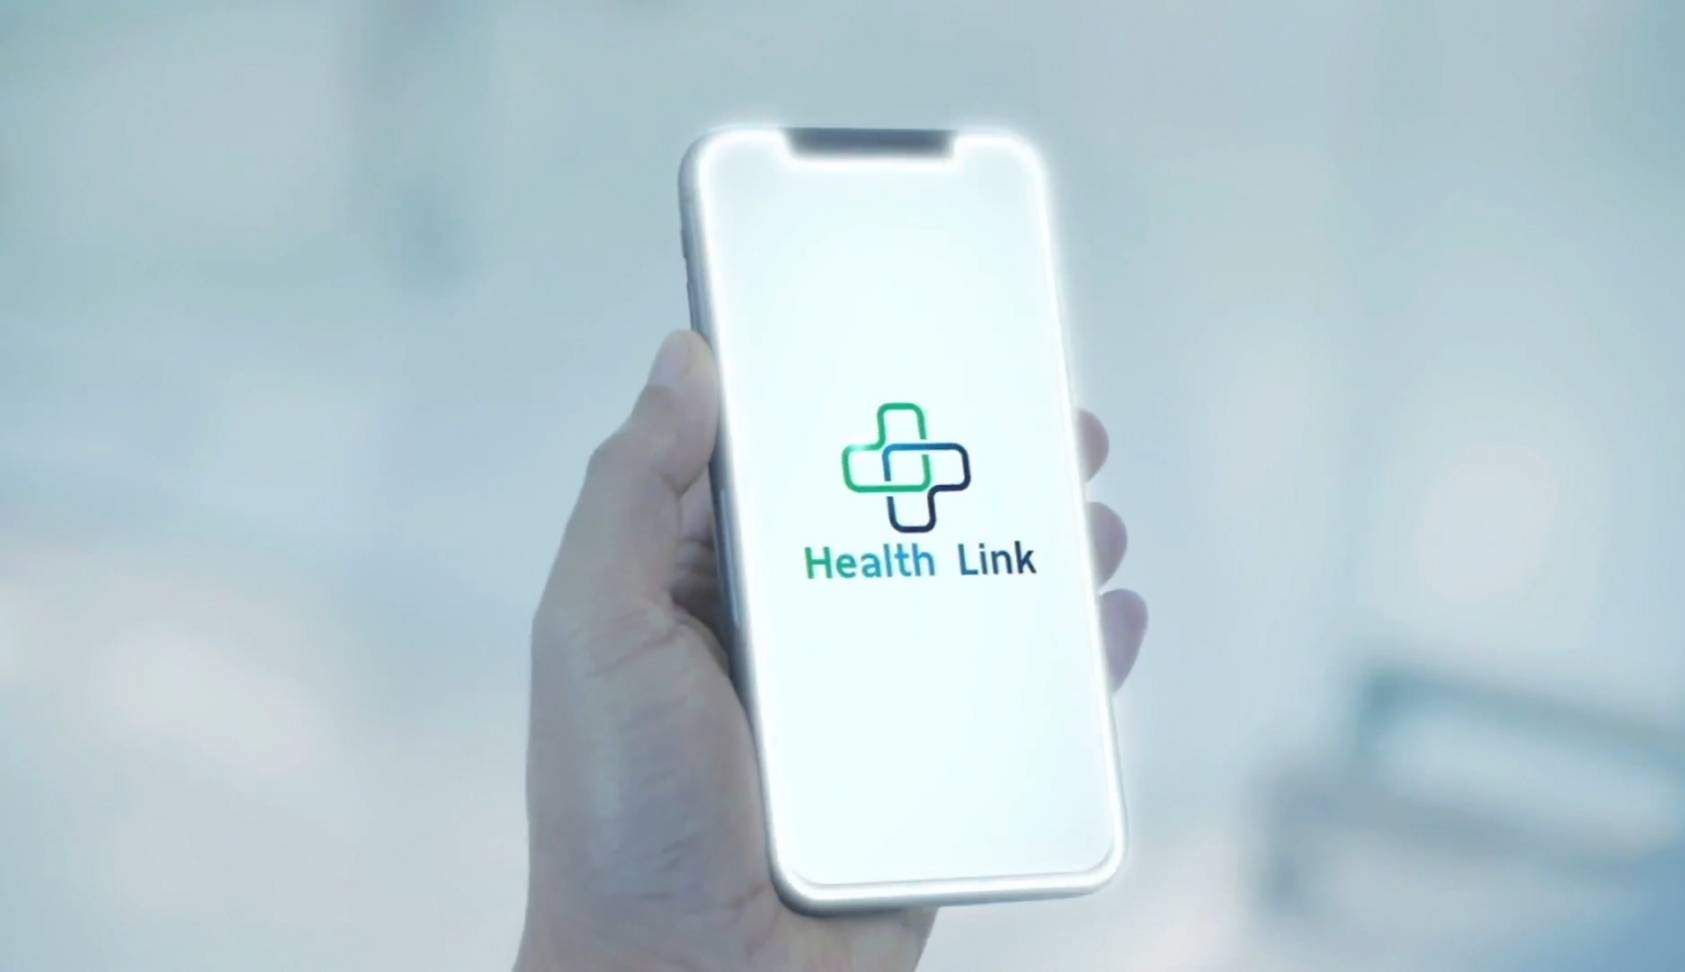 รู้จัก Health Link โครงการเชื่อมต่อข้อมูลสุขภาพคนไข้บนแอปเป๋าตัง – IT